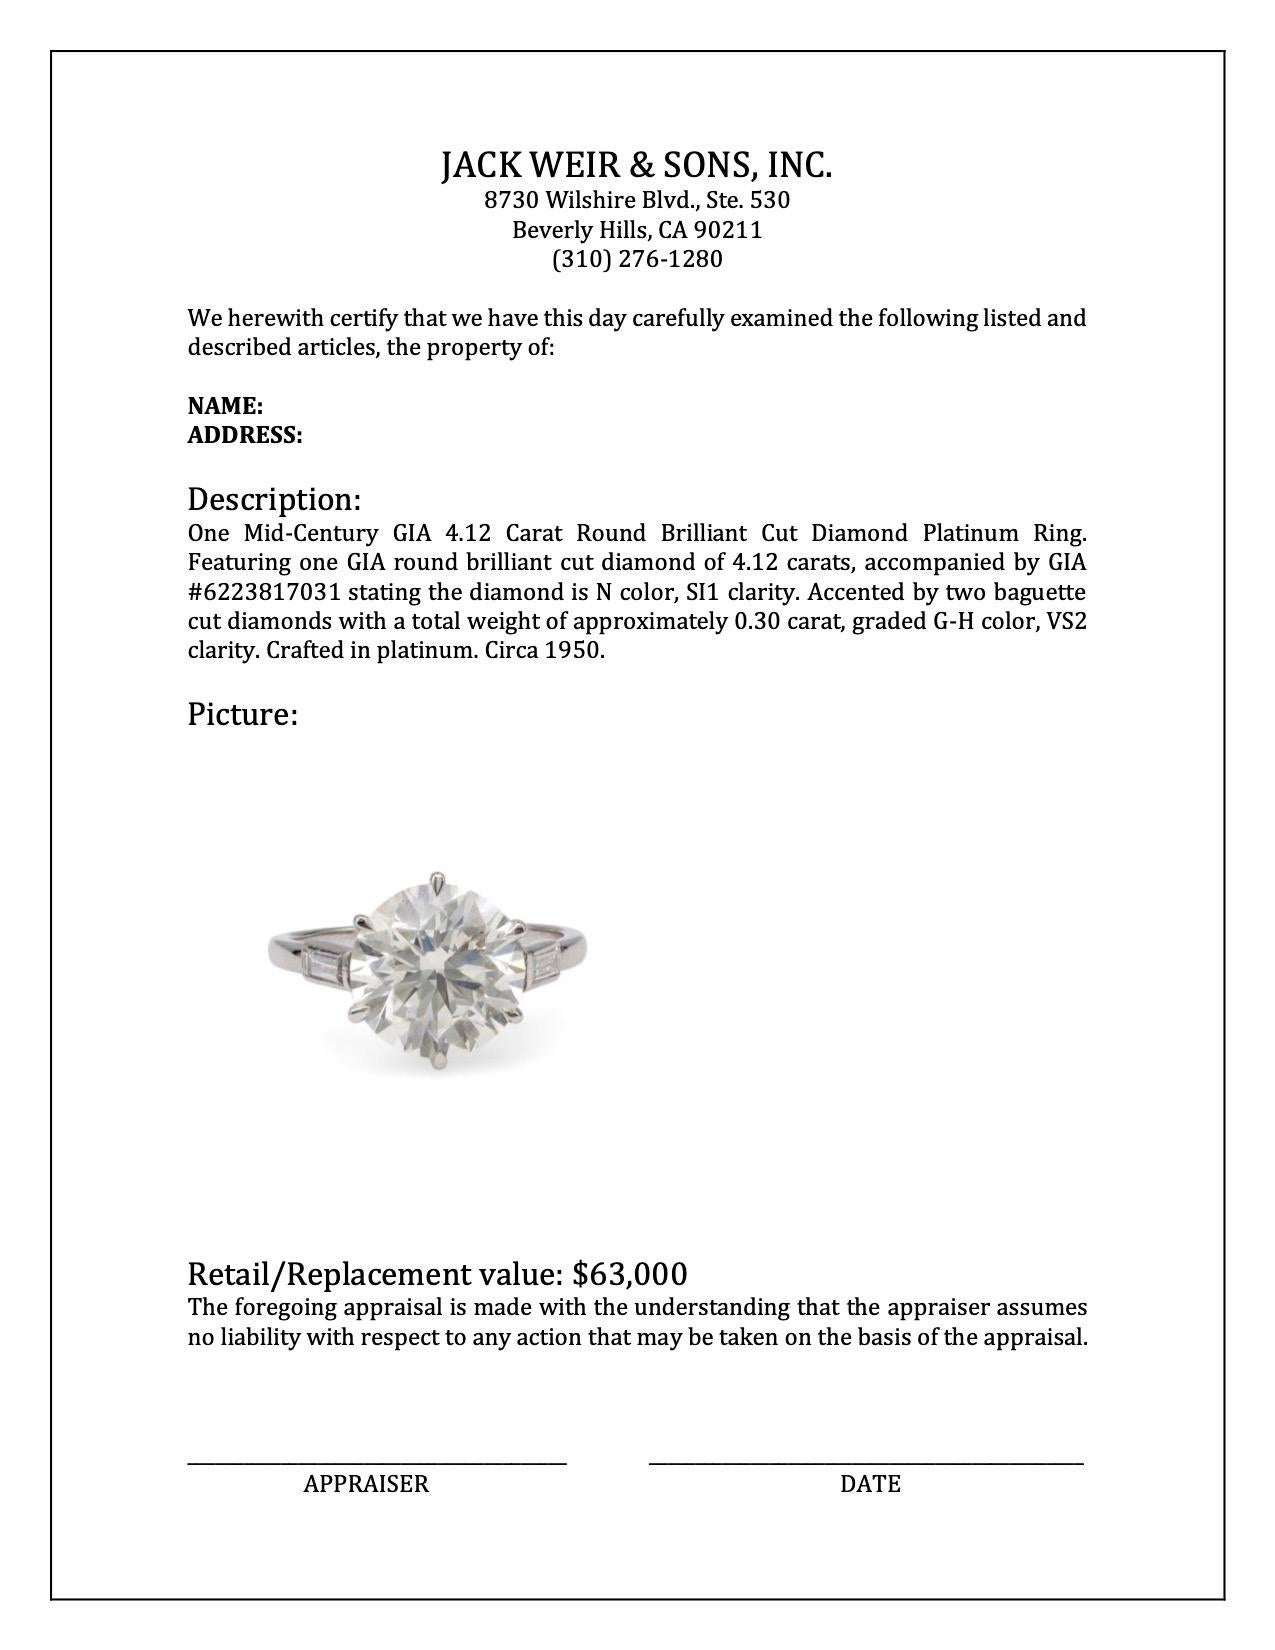 Mid-Century GIA 4.12 Carat Round Brilliant Cut Diamond Platinum Ring 2